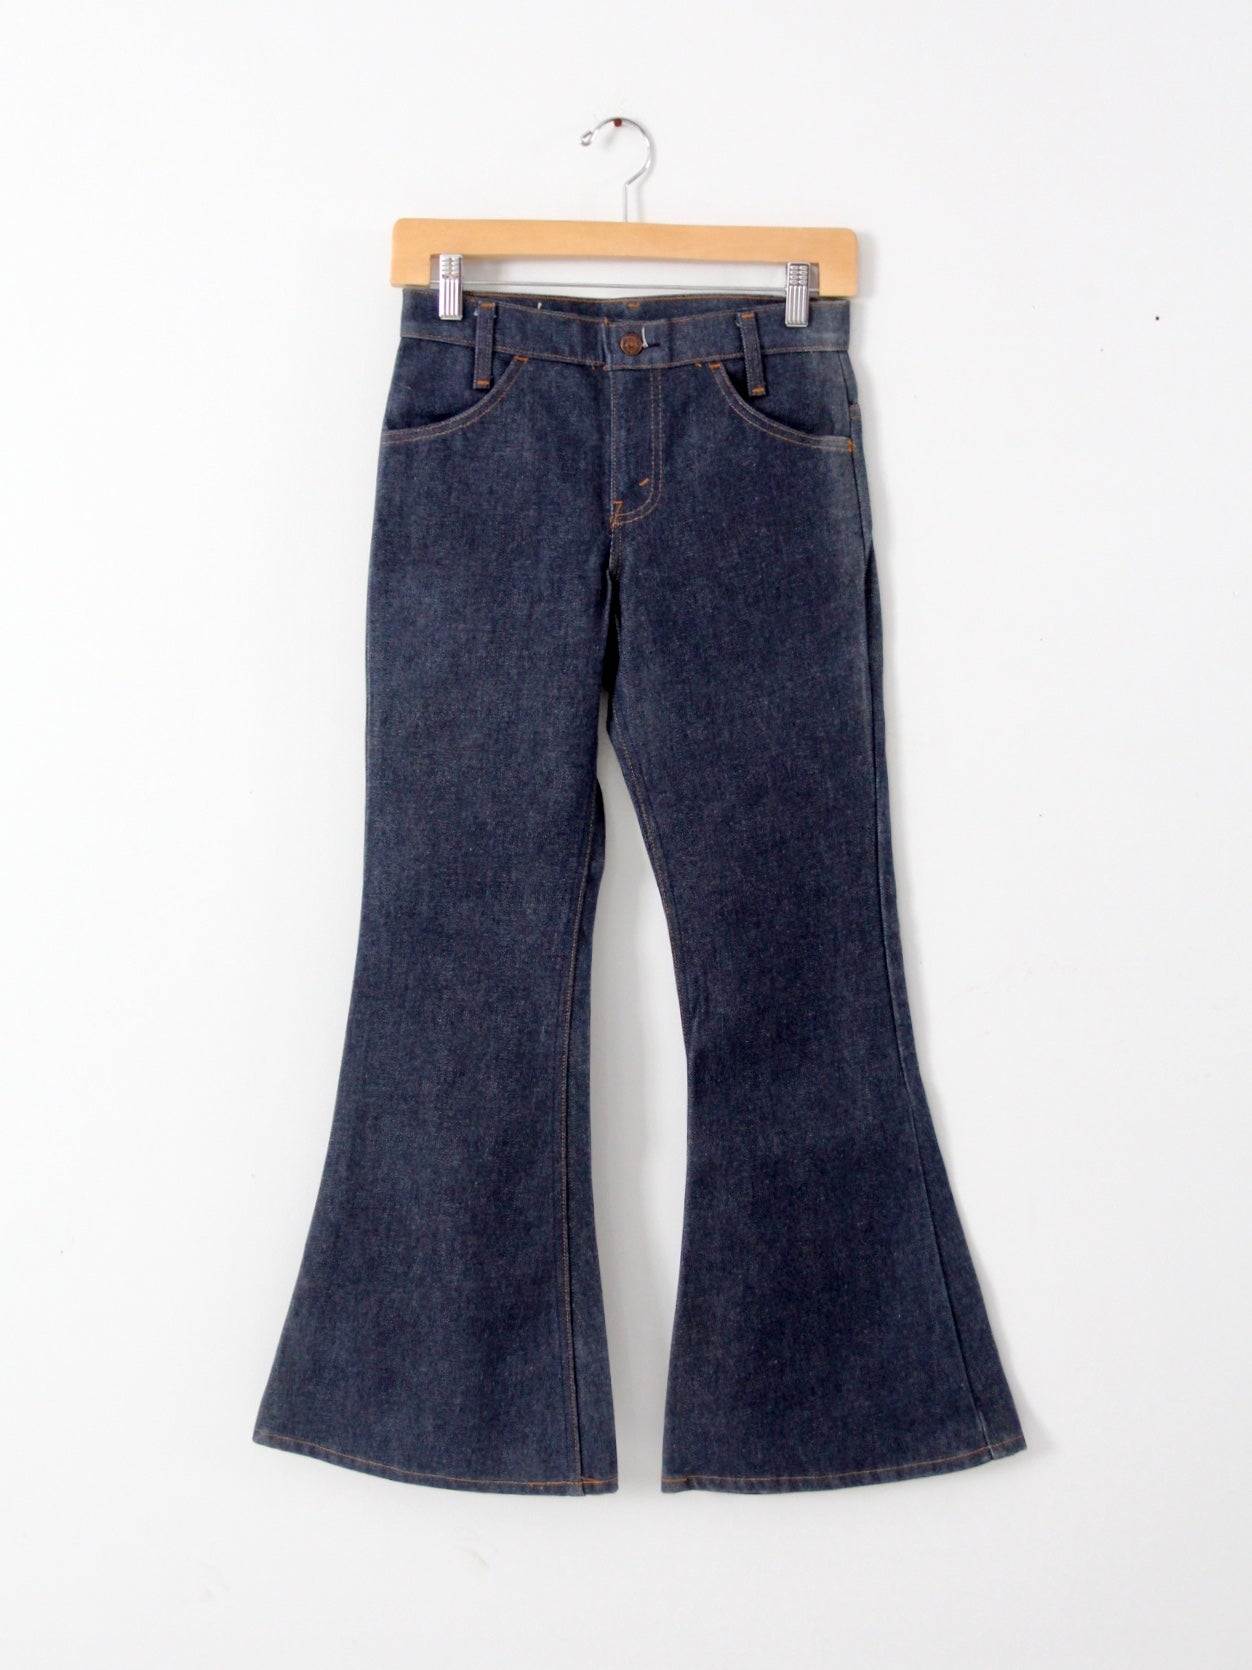 Vintage Levis 684 Bell Bottom Jeans